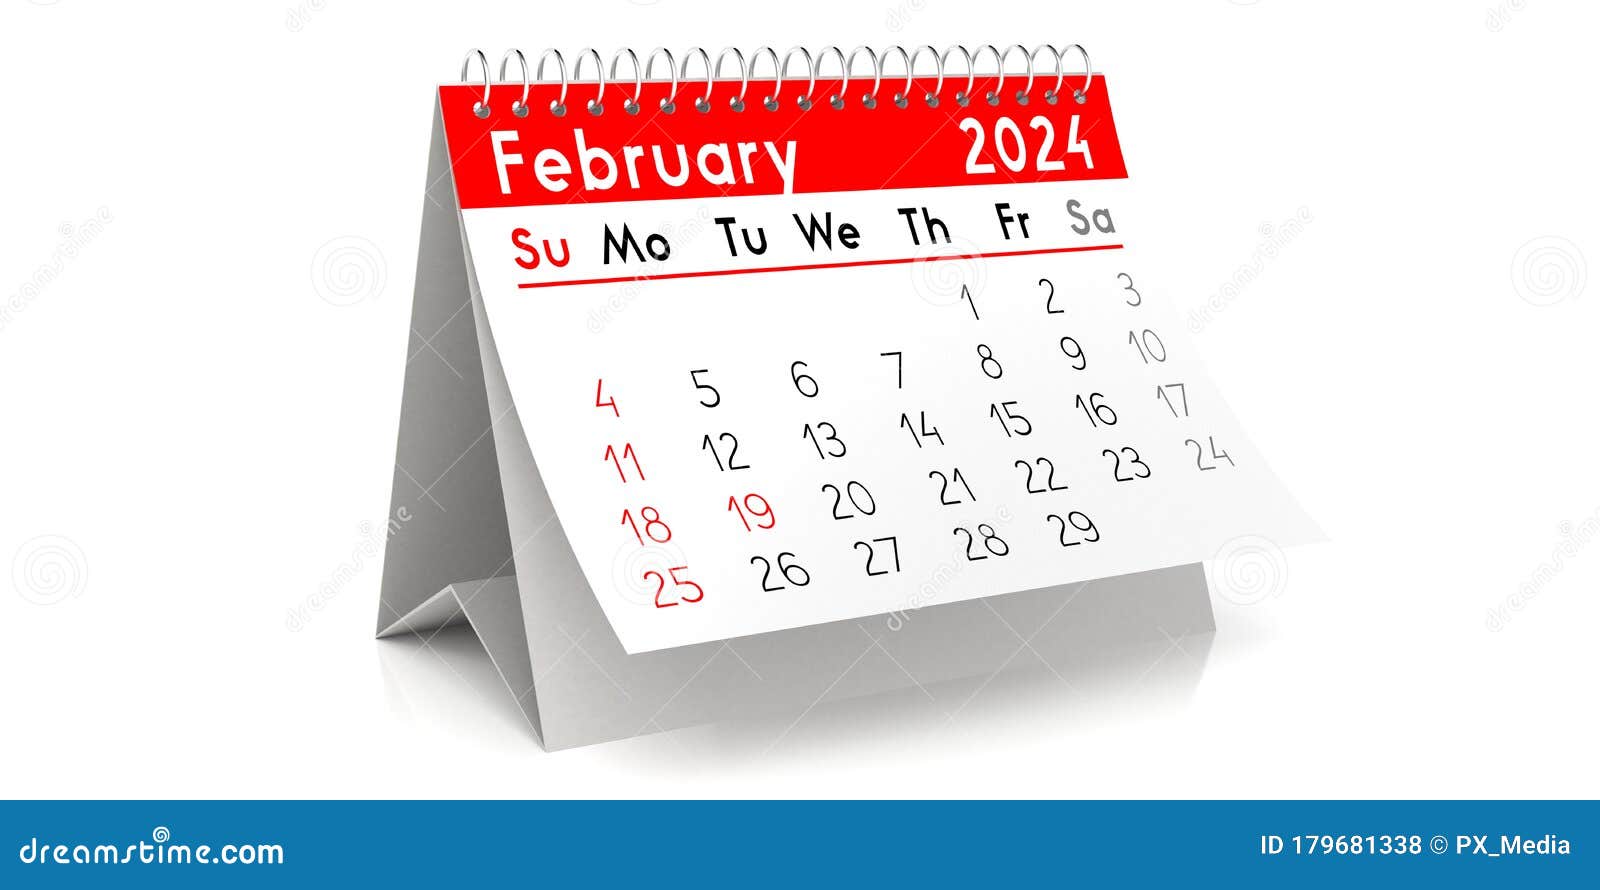 february-2024-table-calendar-3d-illustration-stock-illustration